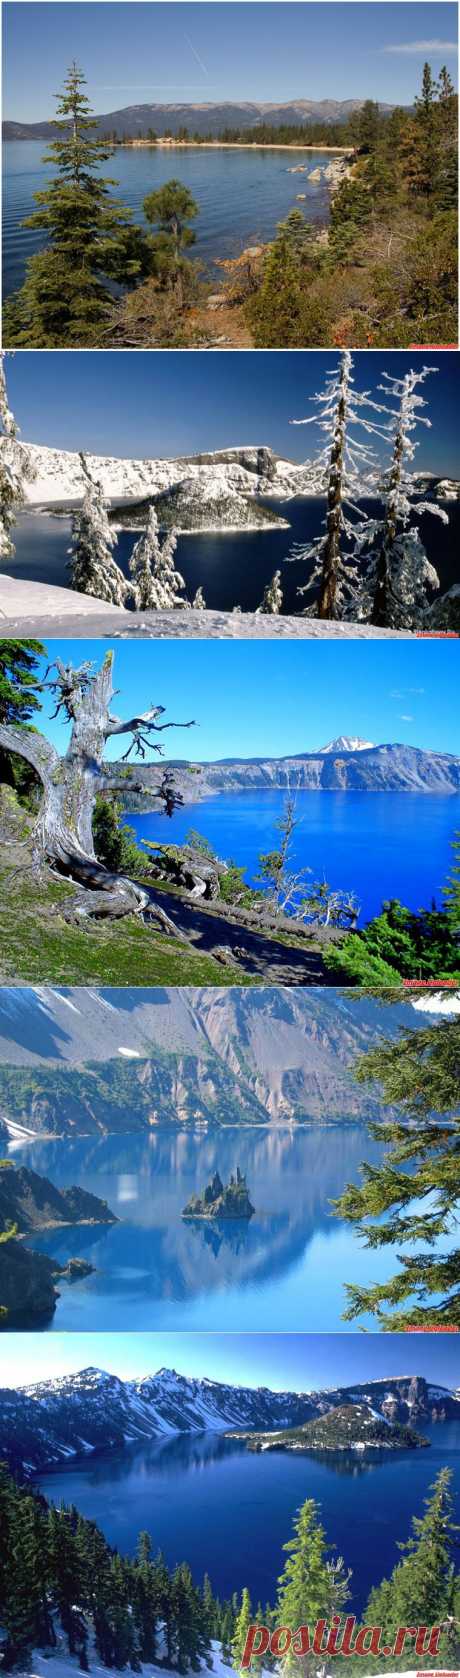 Кратер Лейк – самое глубокое в мире озеро находящееся выше уровня моря. Озеро Крейтер (angl. Crater Lake) — кратерное озеро в США, штат Орегон. Основная достопримечательность национального парка Озеро Крейтер, славится своим глубоким синим цветом и чистотой воды.